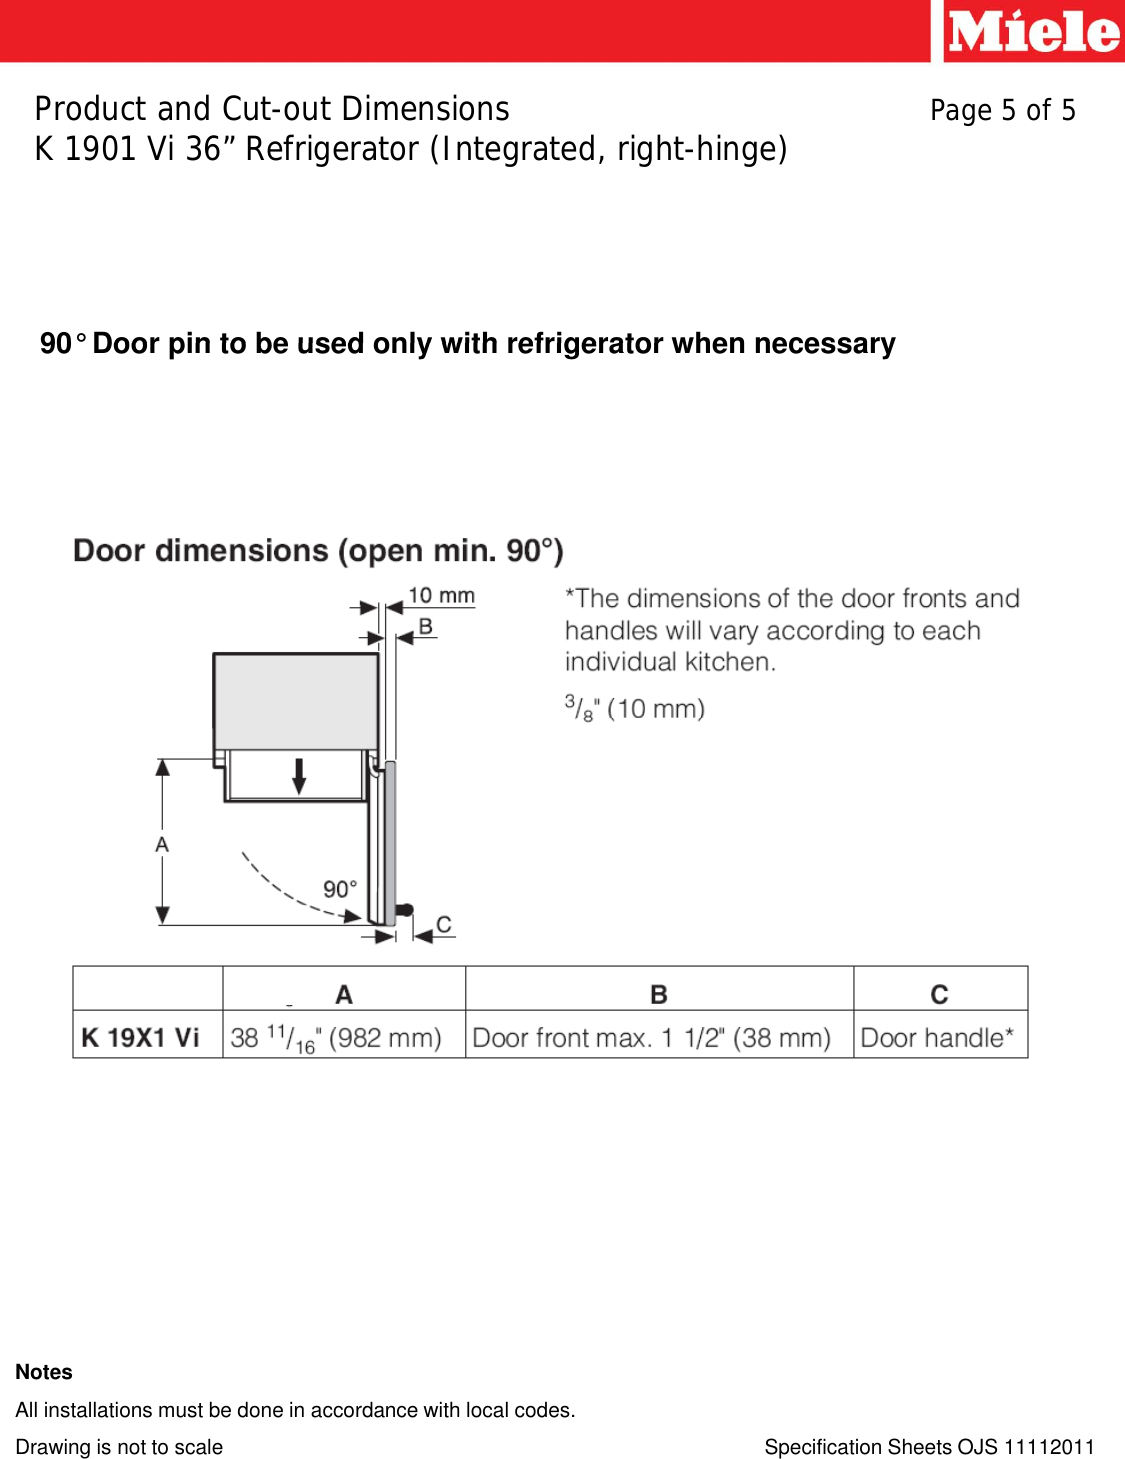 Page 5 of 5 - Miele Miele-Refrigerator-F-1911-Vi-36-Users-Manual- Microsoft  - F1911Vi_K1901Vi [Compatibility Mode] Miele-refrigerator-f-1911-vi-36-users-manual